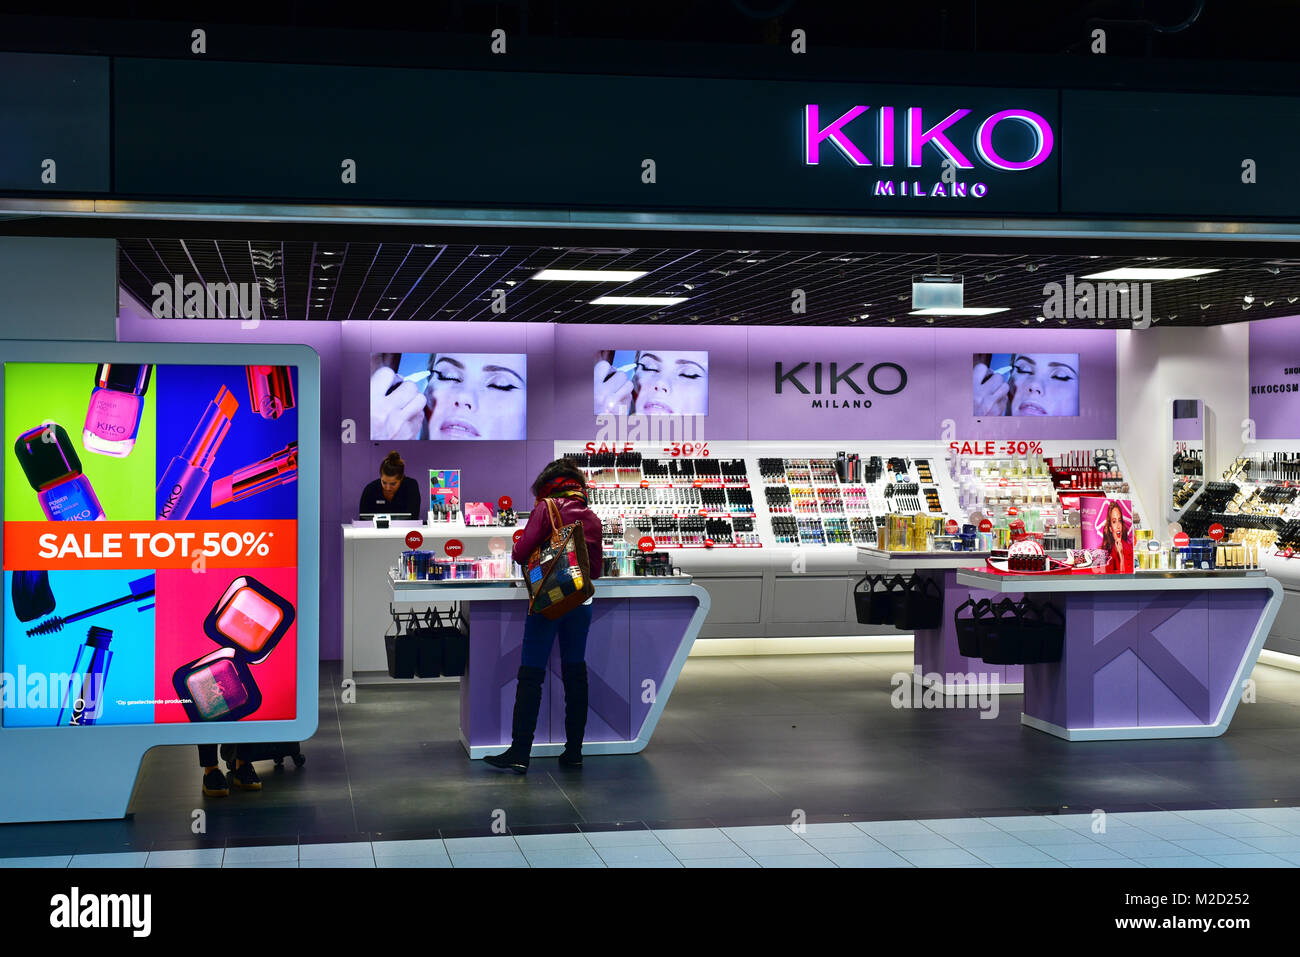 Kiko milano store immagini e fotografie stock ad alta risoluzione - Alamy